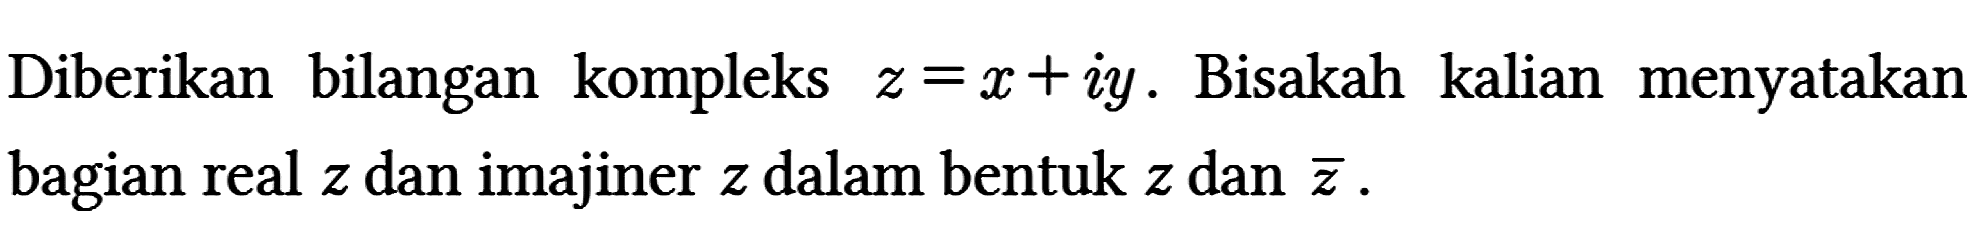 Diberikan bilangan kompleks z = x + iy. Bisakah kalian menyatakan bagian real z dan imajiner z dalam bentuk z dan z.